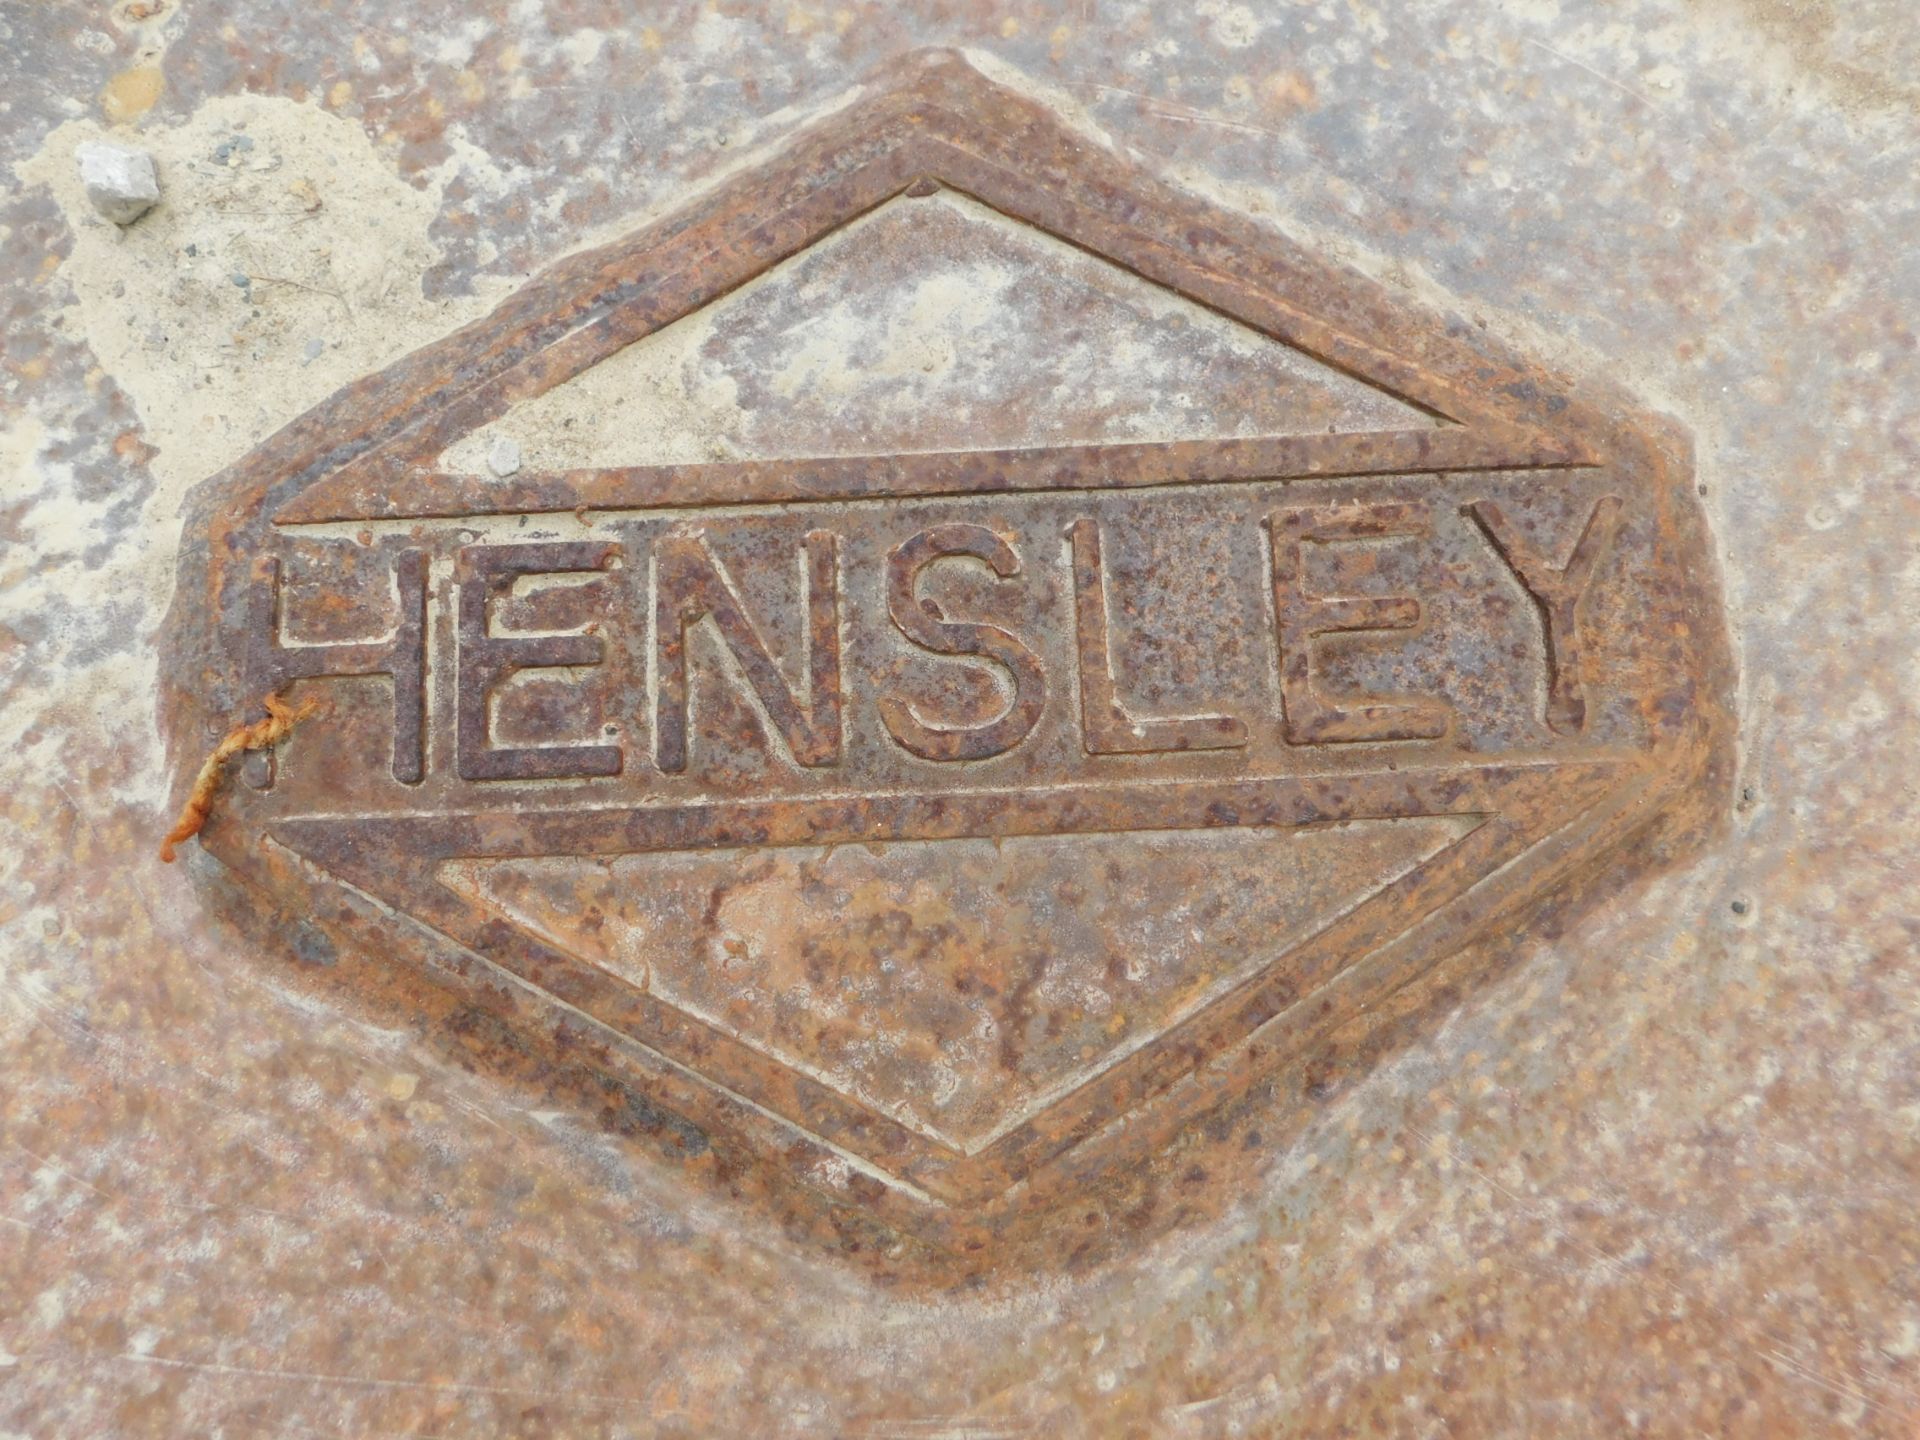 Hensley 24" V-Bottom Excavator Bucket - Image 7 of 7